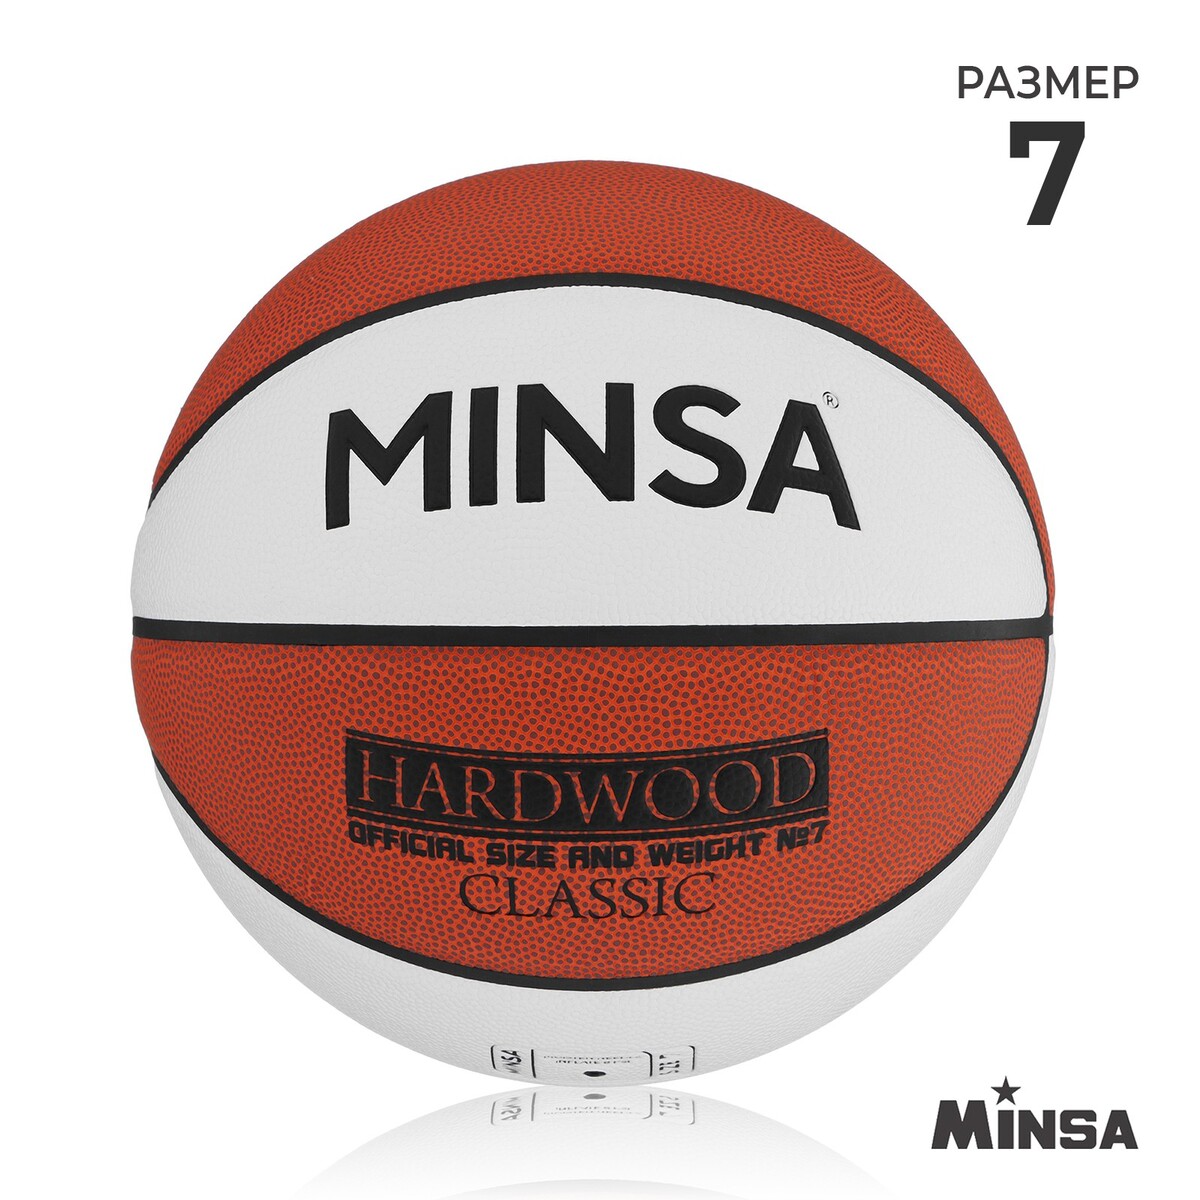 Баскетбольный мяч minsa hardwood classic, pu, клееный, 8 панелей, р. 7 мяч баскетбольный molten b7g3800 р 7